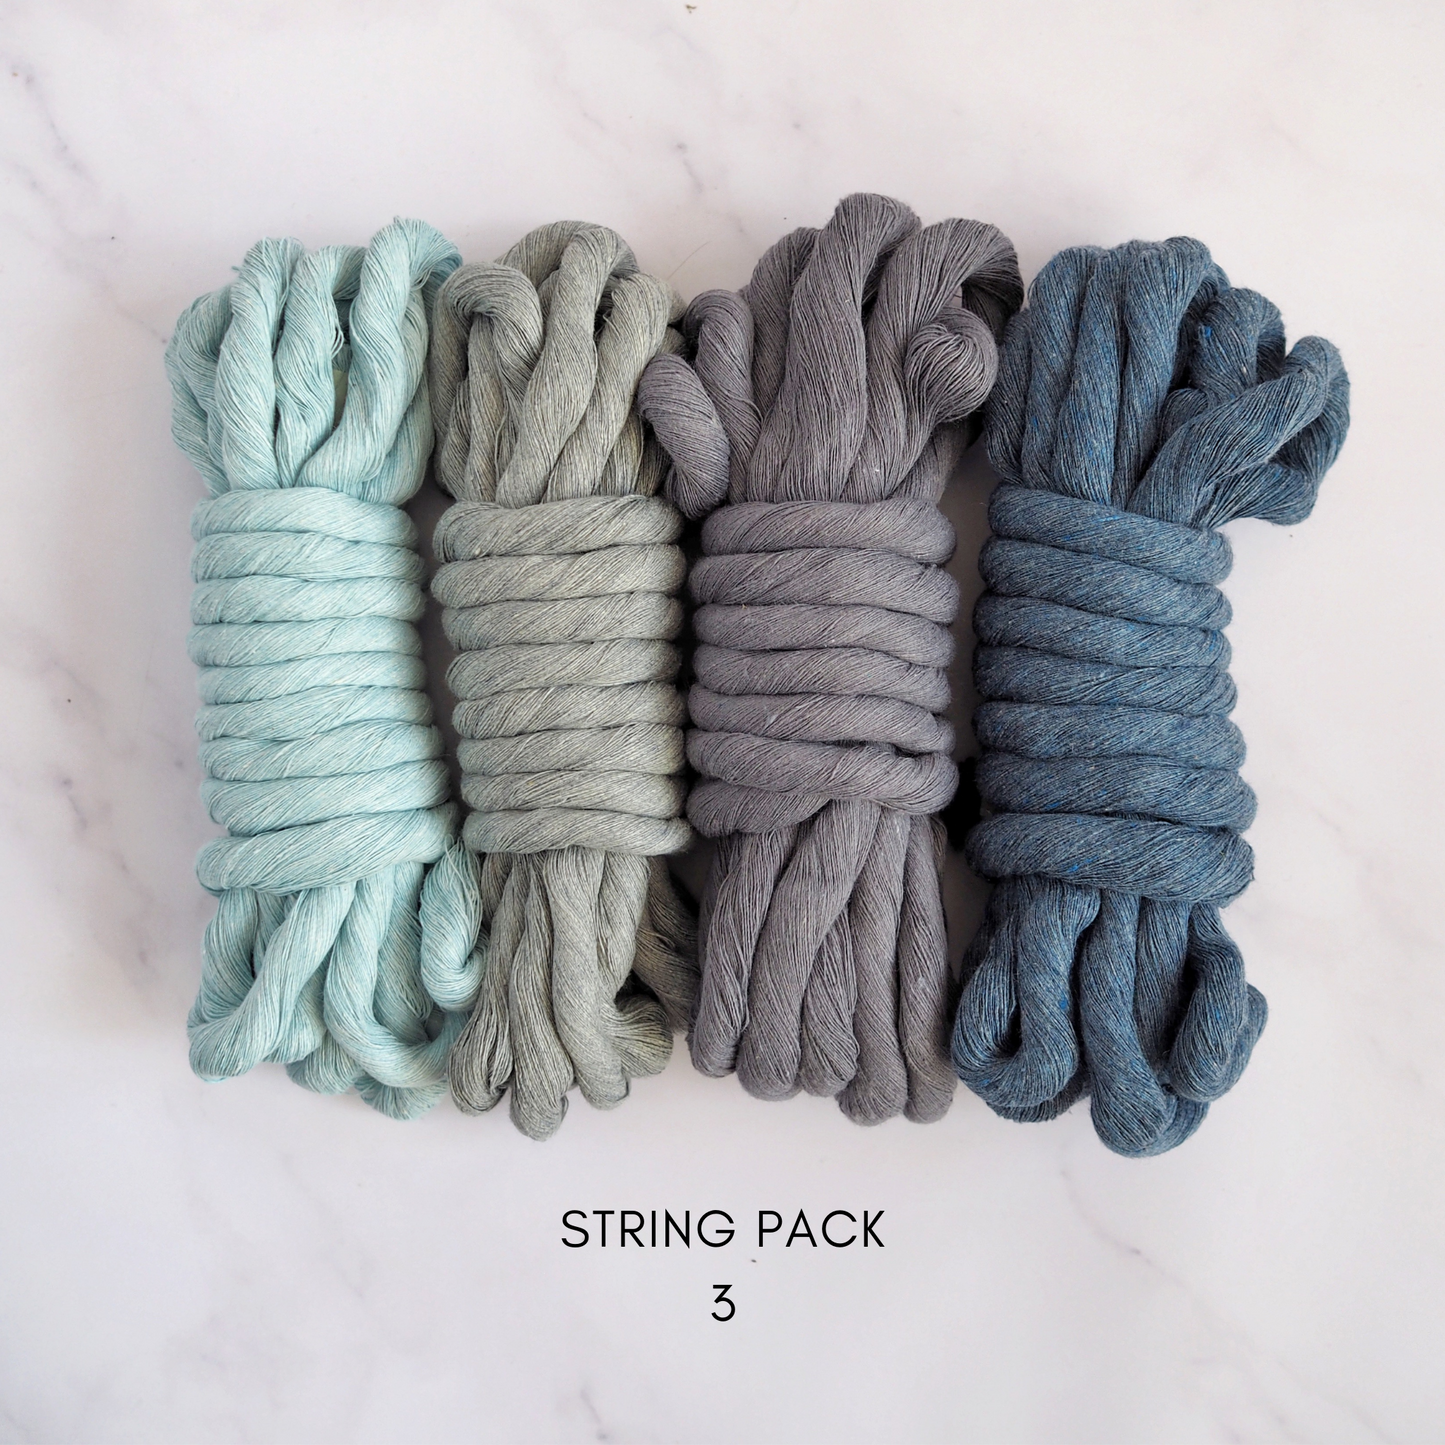 12mm String | Pack 3 The Joyful Studio